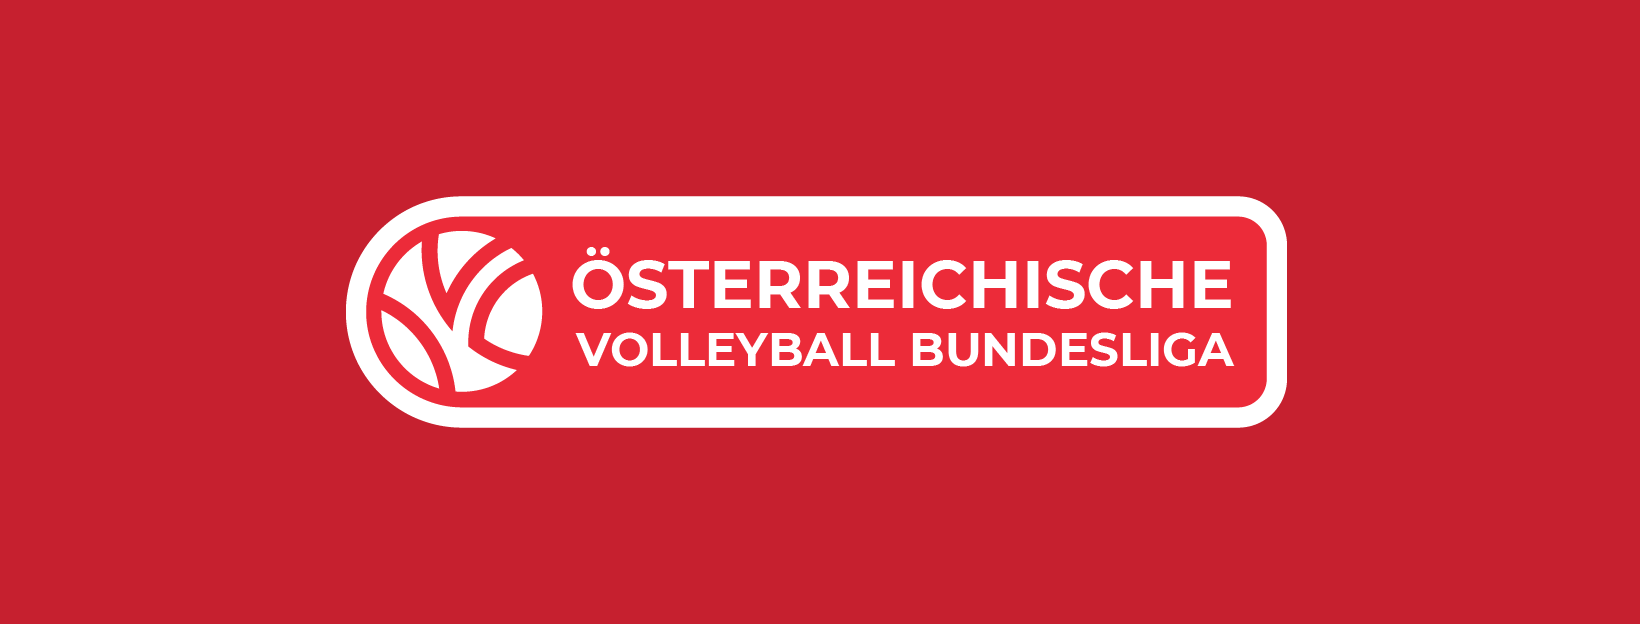 Hier entsteht die Web-Präsenz der Österreichischen Volleyball Bundesliga.